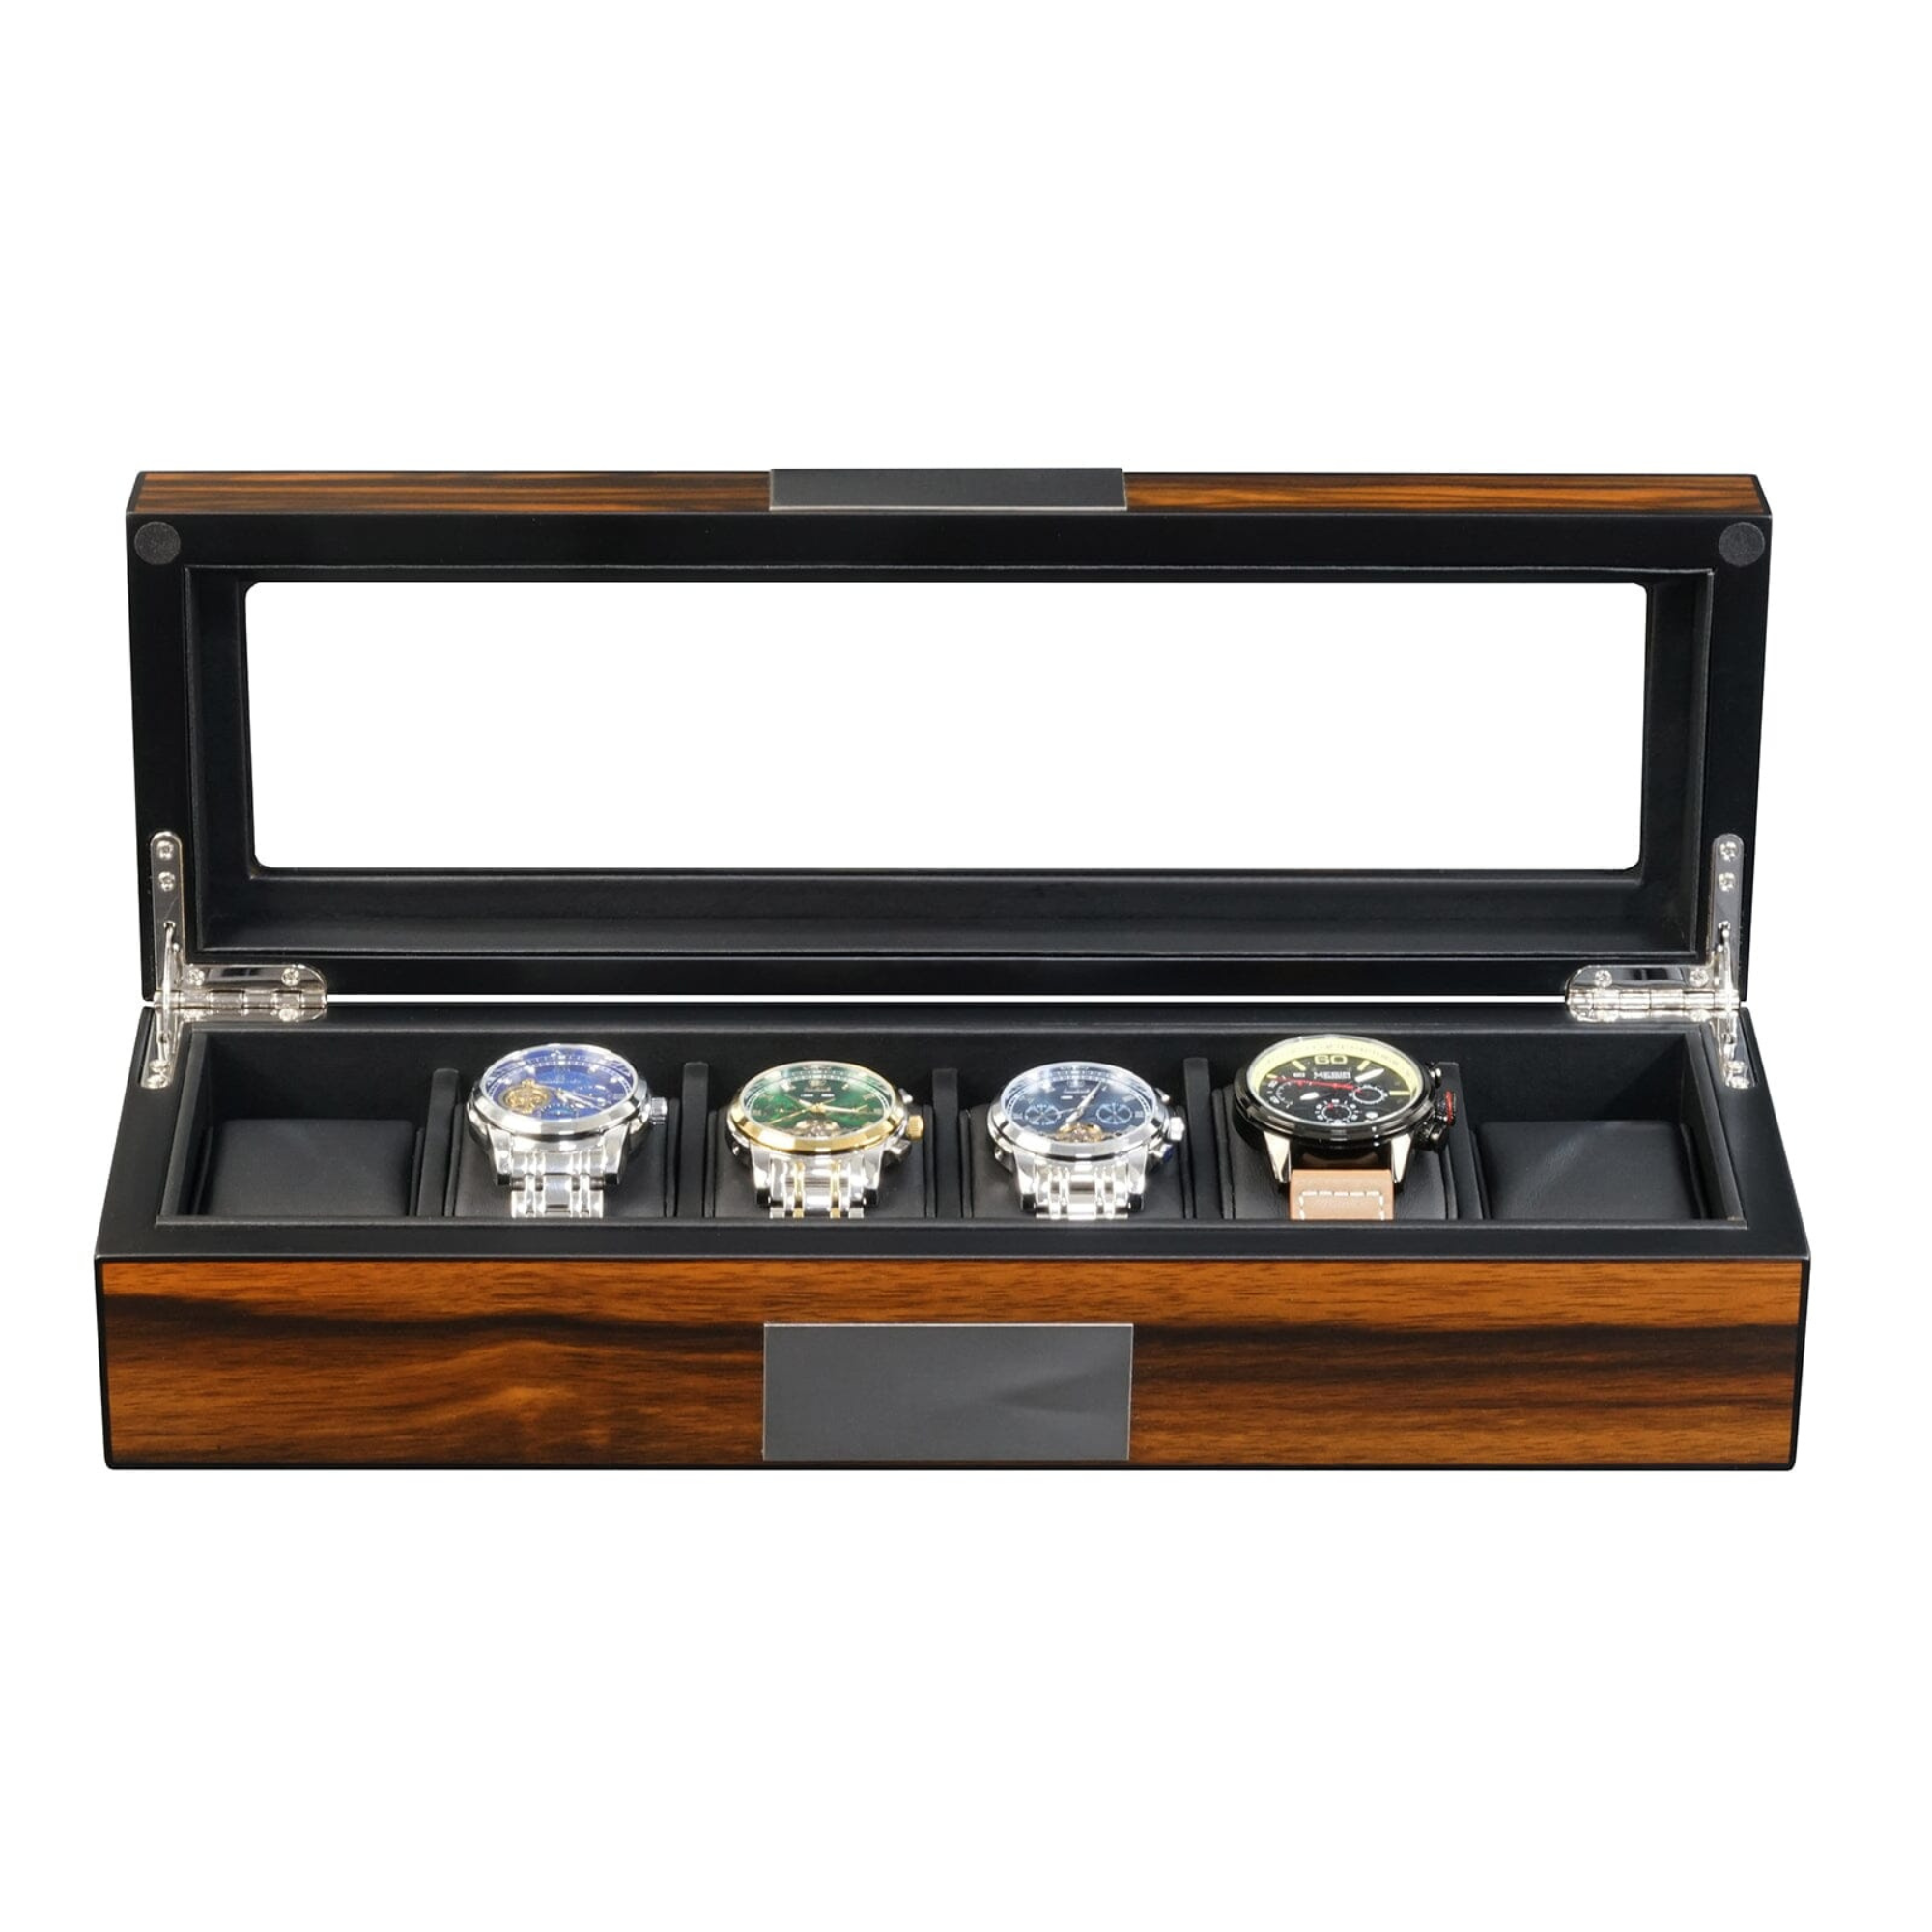 6 Slots Watch Box in Wooden Ebony